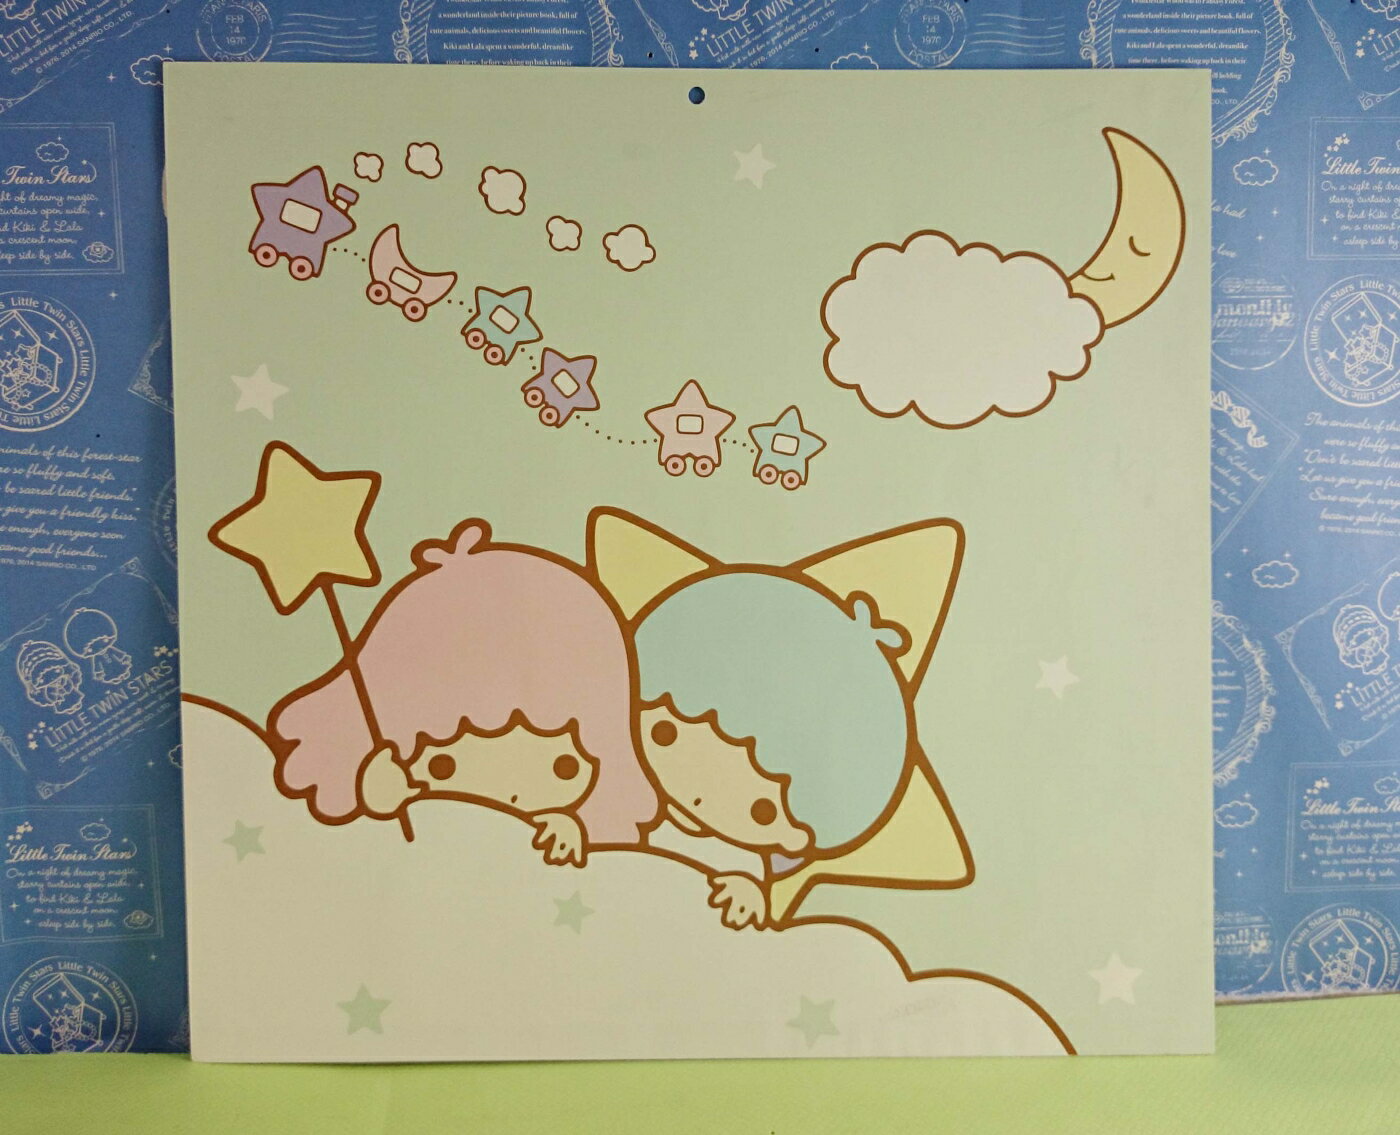 【震撼精品百貨】Little Twin Stars KiKi&LaLa 雙子星小天使 造型卡片 綠色 震撼日式精品百貨